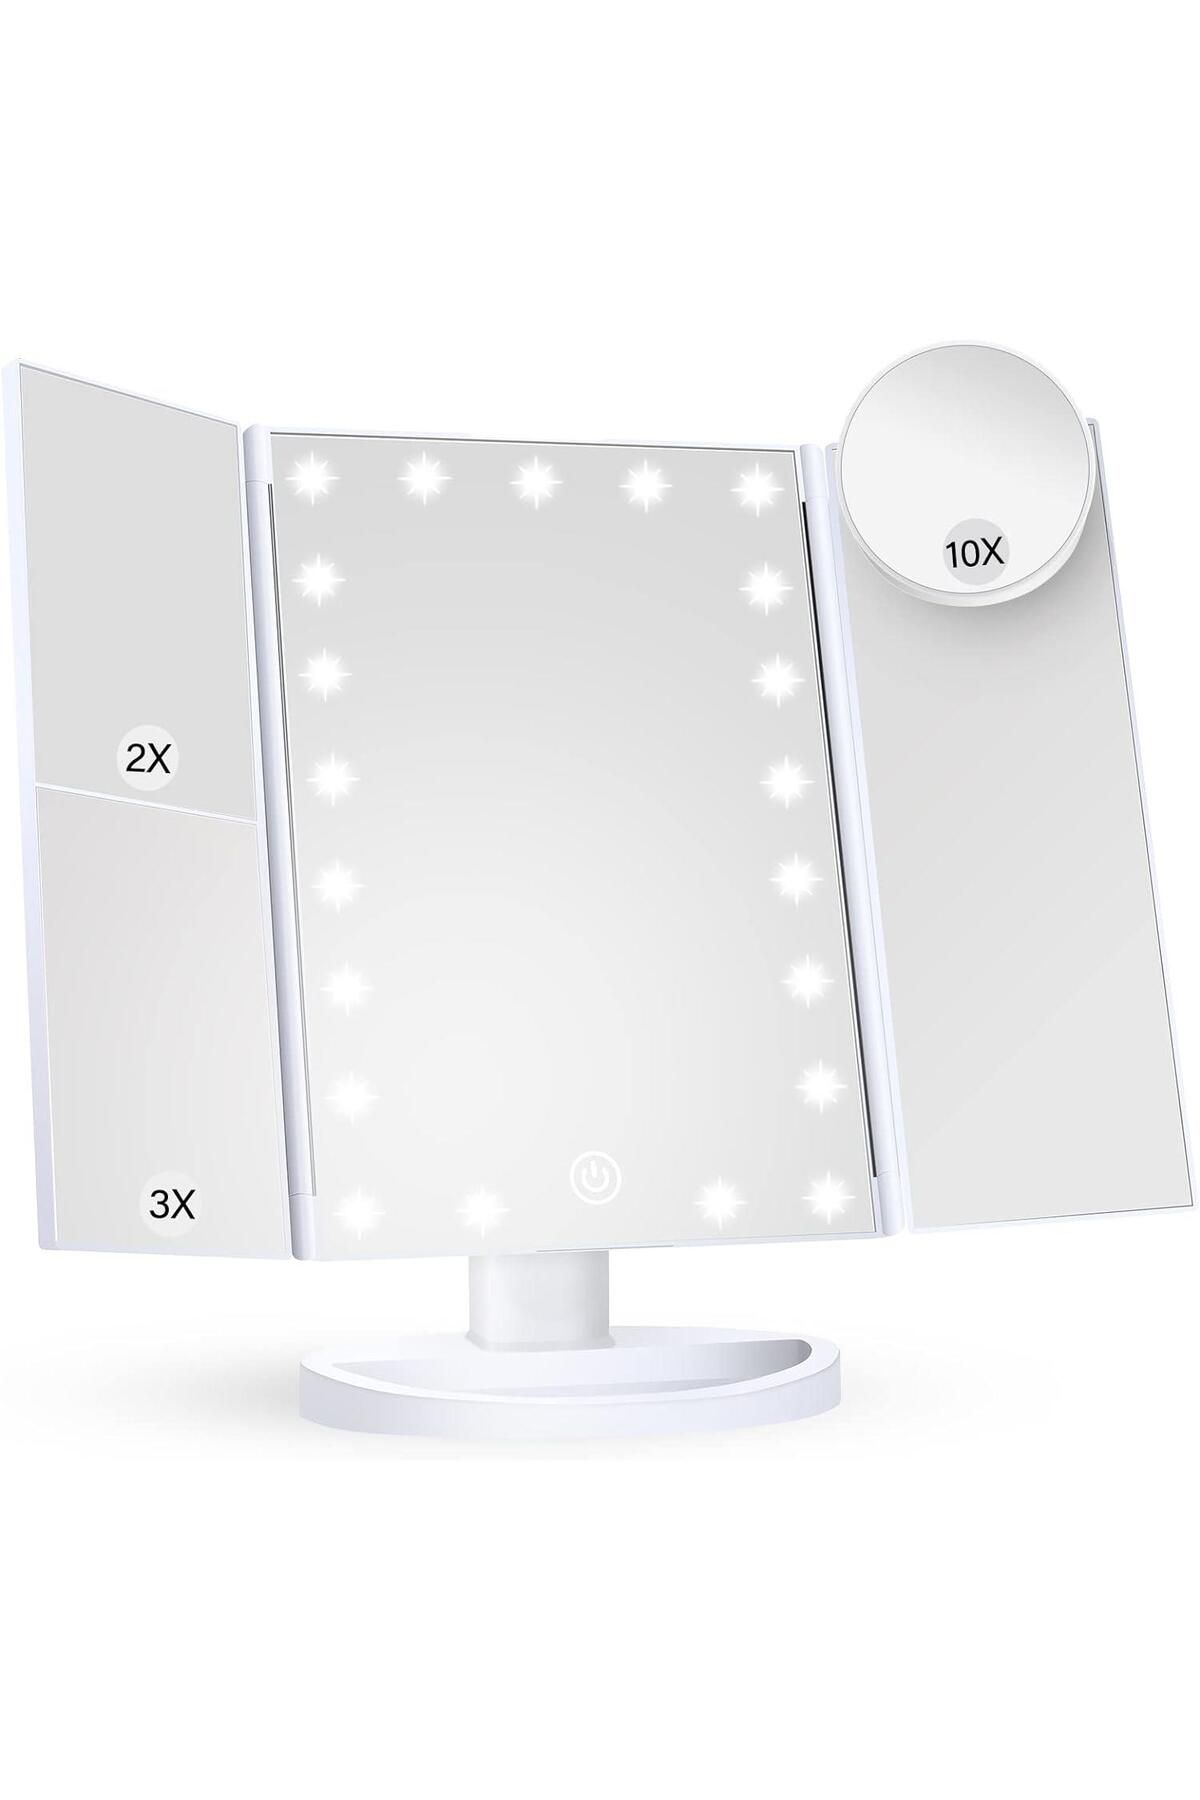 valkyrie Led Işıklı Katlanabilir Makyaj Aynası - 2x 3x 10x Büyütme Modu - Dokunmatik Touch Ekran - 5